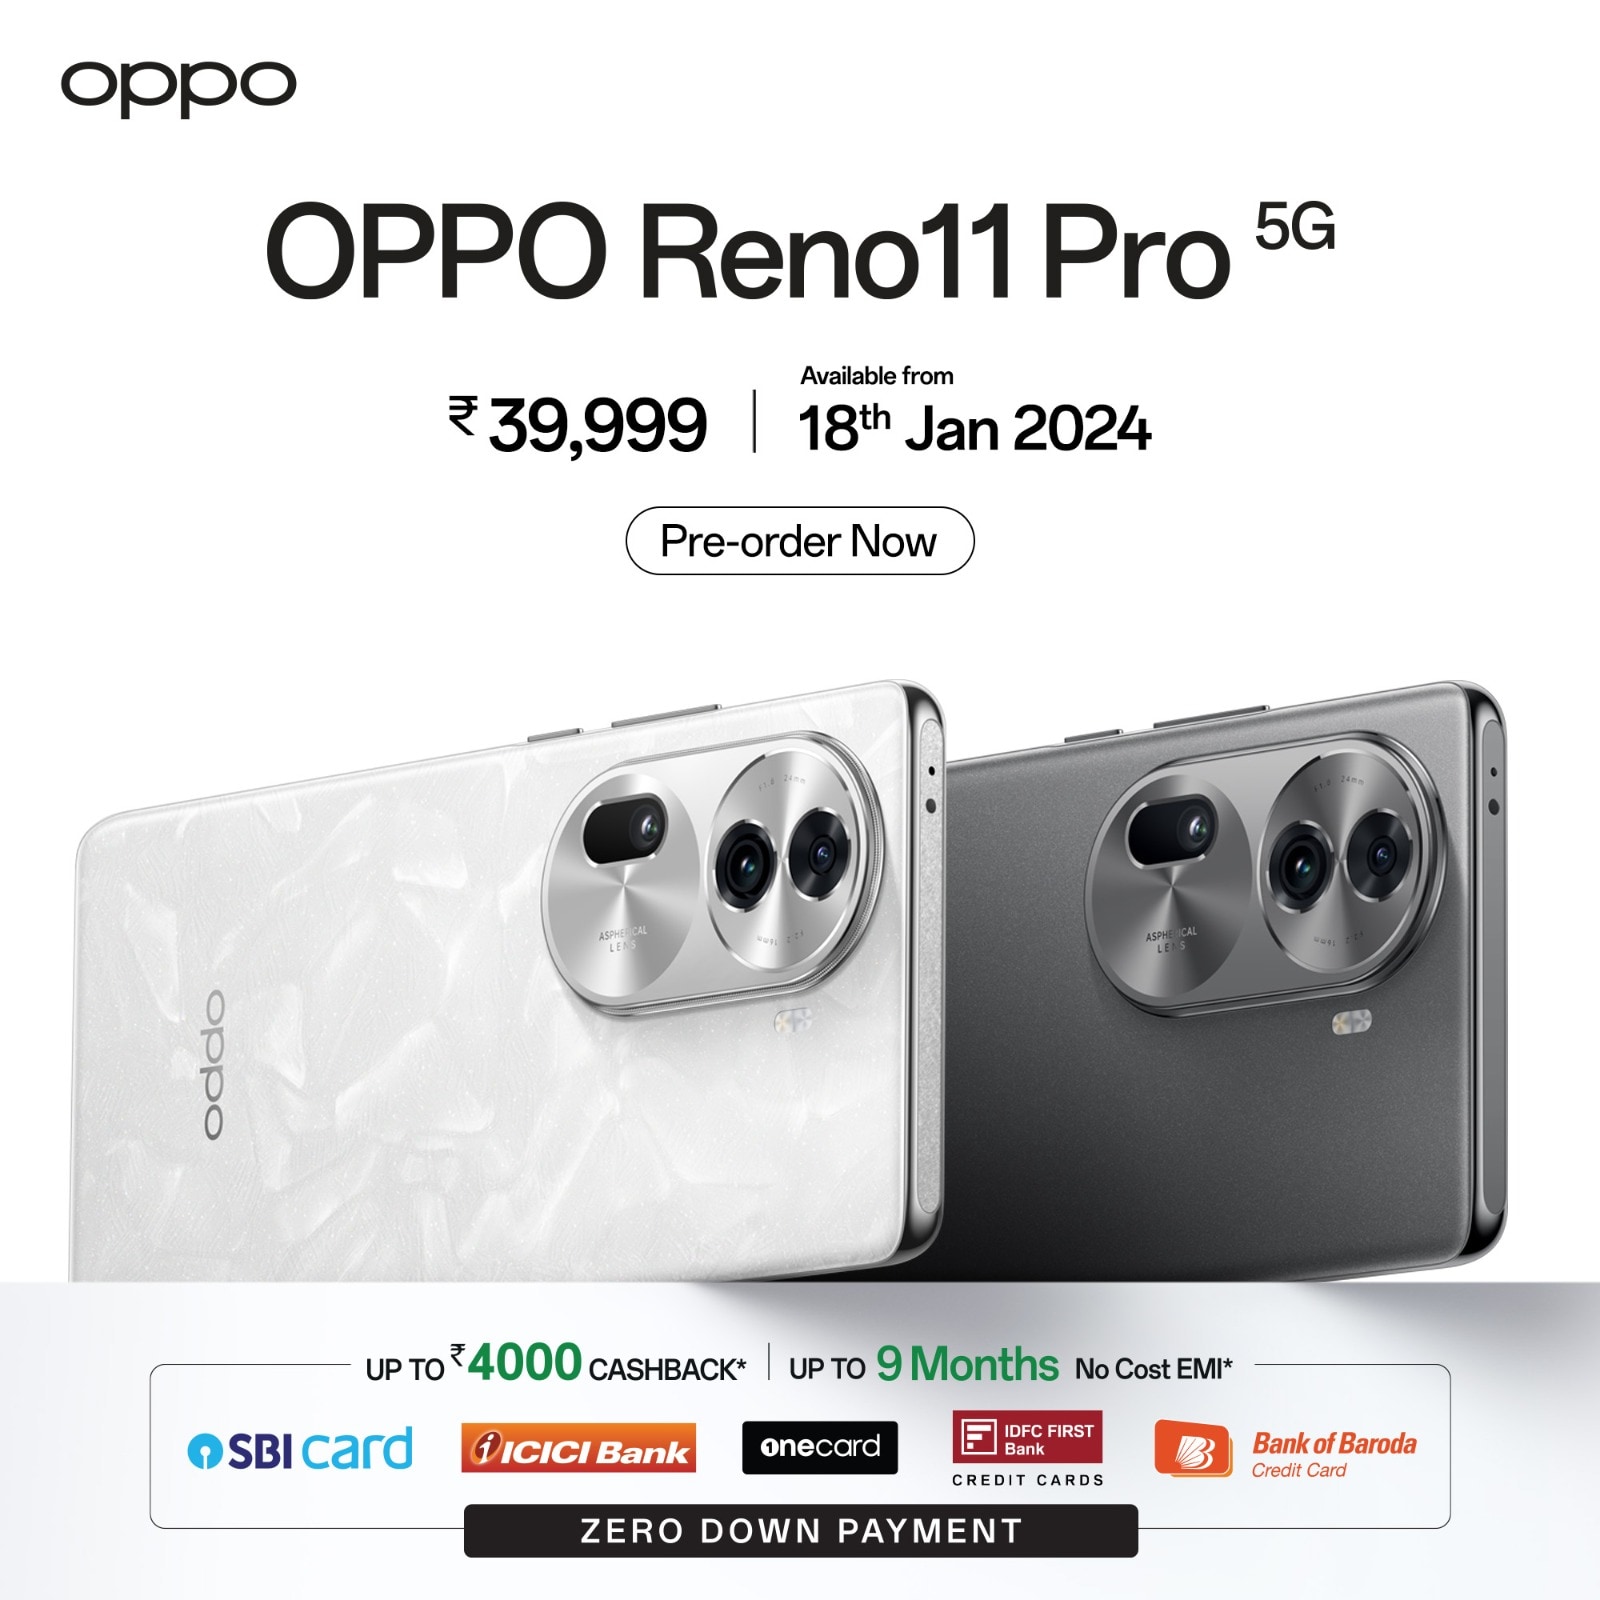 El arte de la tecnología: descubra la cámara incomparable del OPPO Reno11 Pro 5G